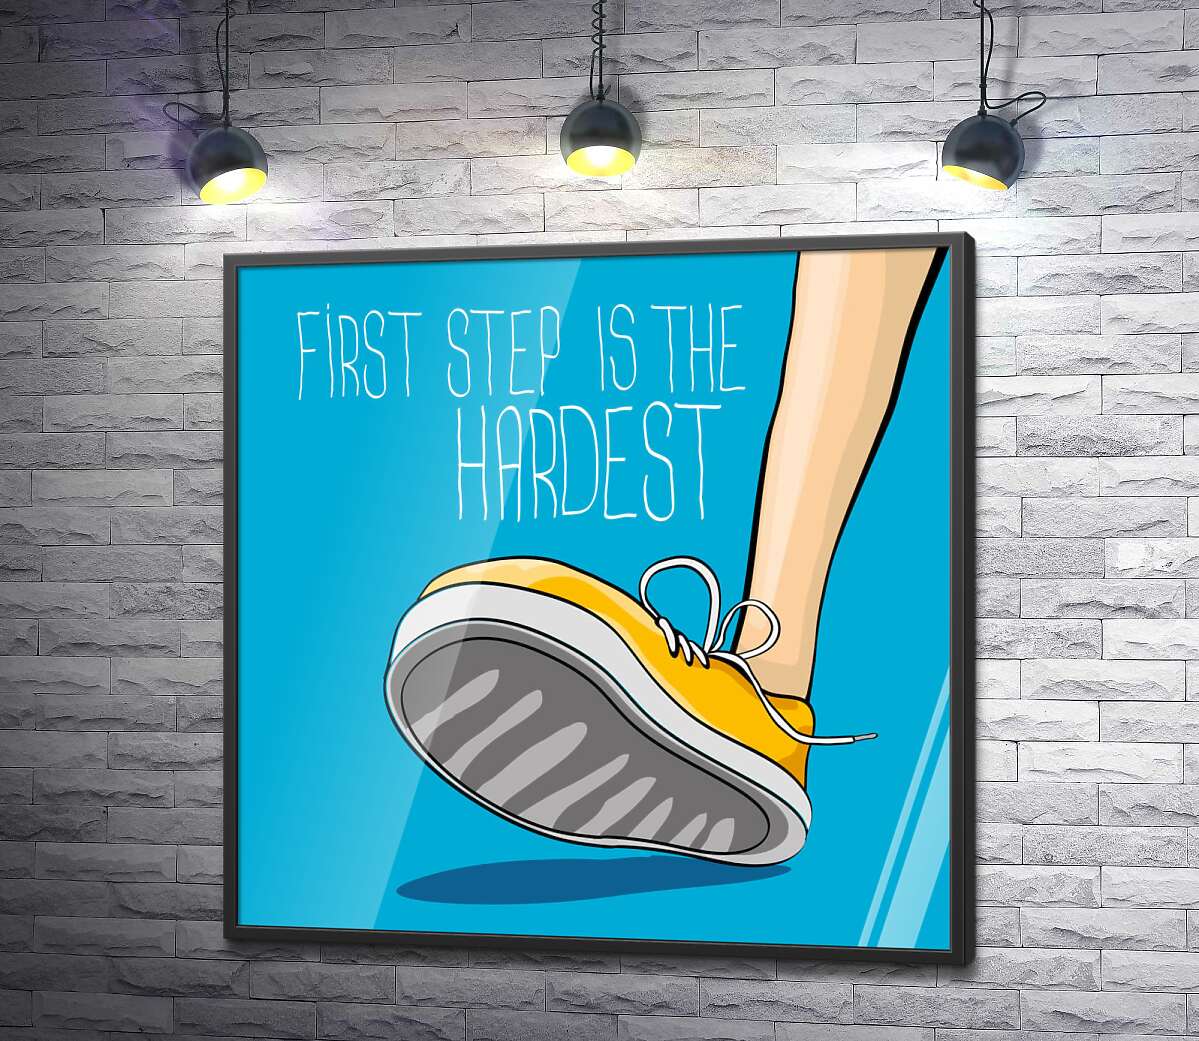 постер Жовтий кросівок ступає на землю поряд з фразою "first step is the hardest"